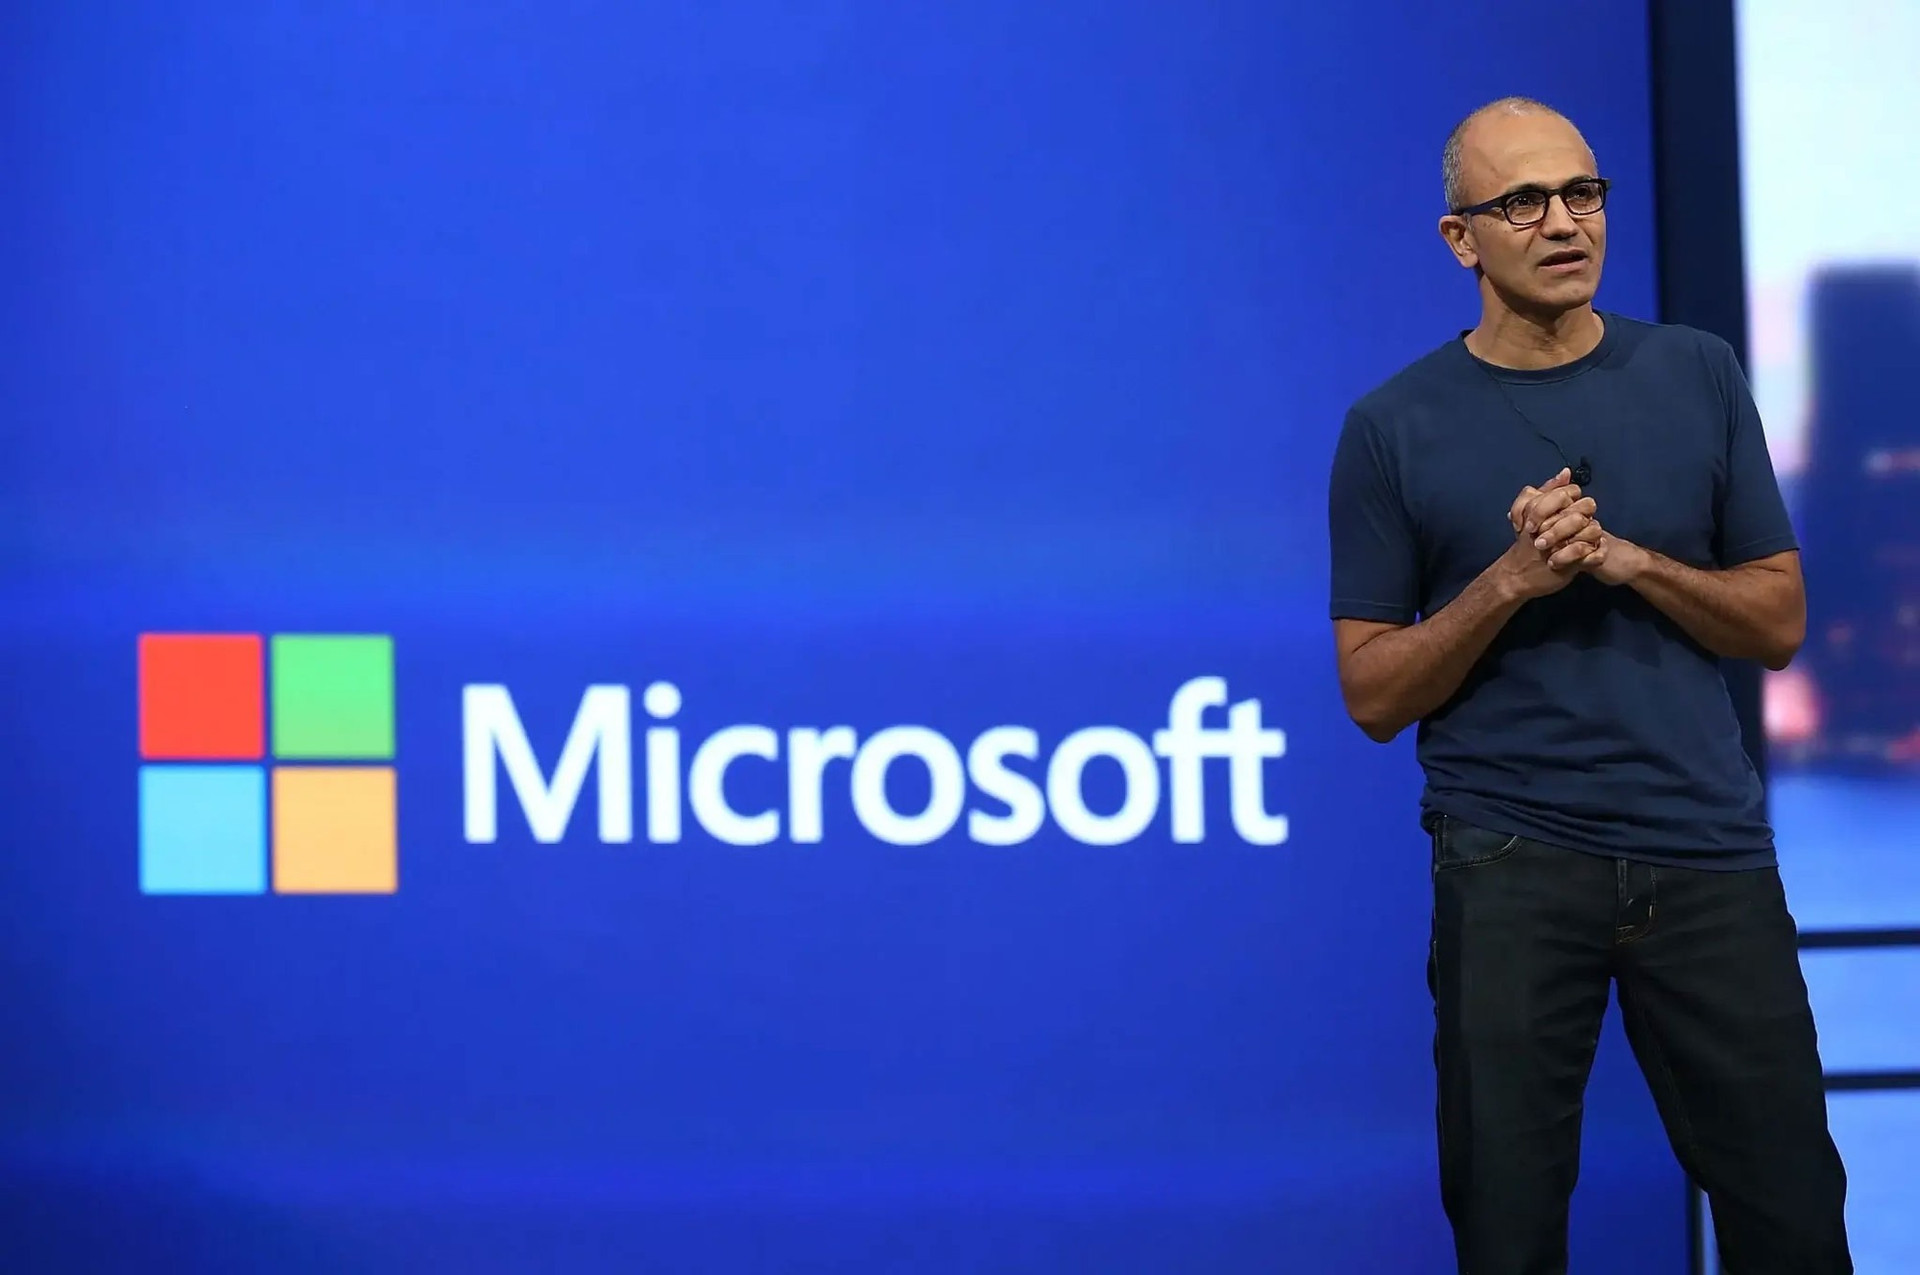 Giám đốc điều hành Microsoft Satya Nadella hé lộ thông tin về hệ điều hành Windows mới sắp ra mắt.